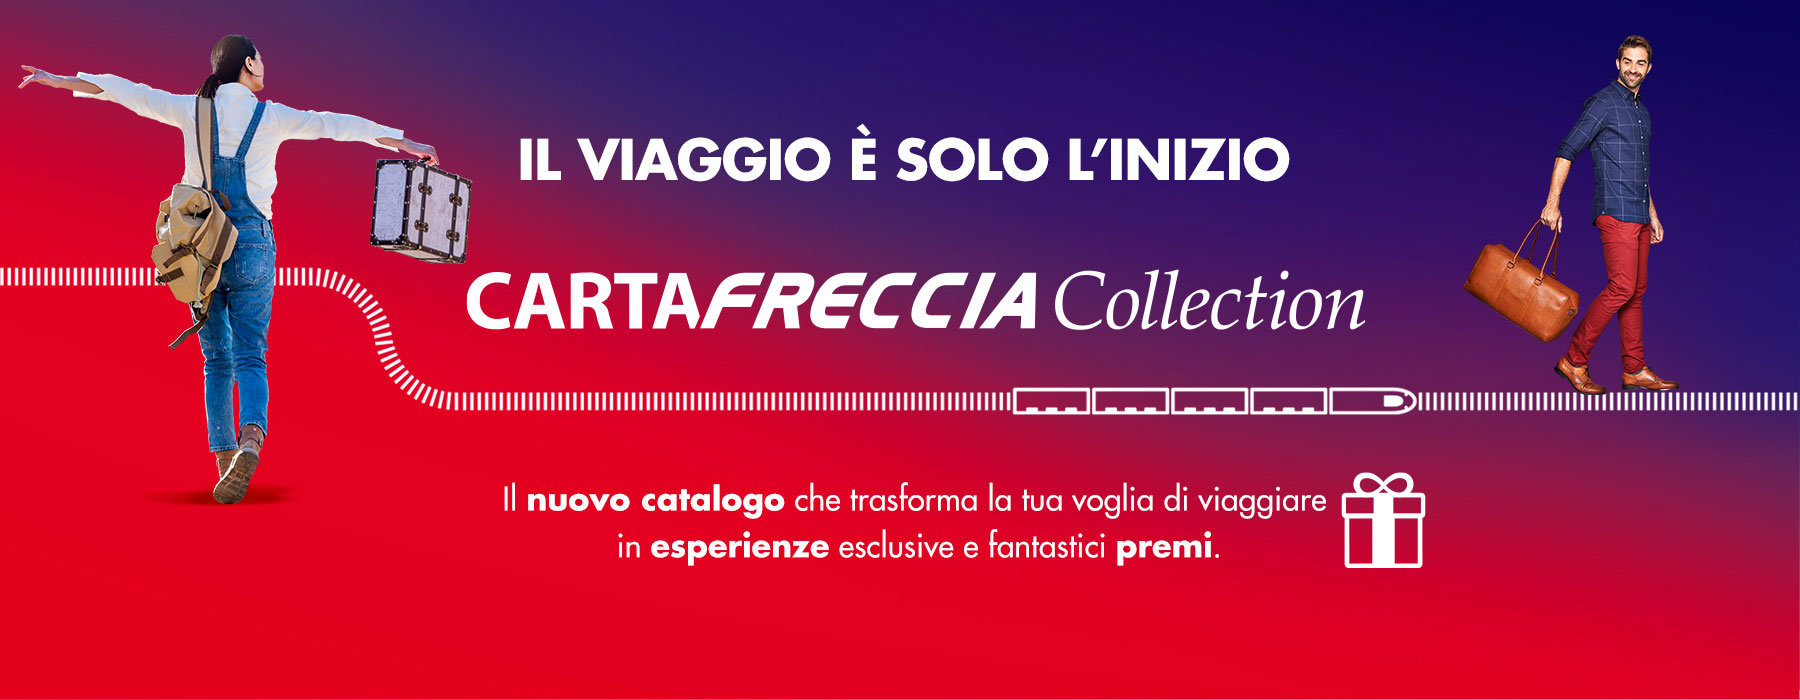 Nasce il nuovo catalogo premi CartaFreccia Collection